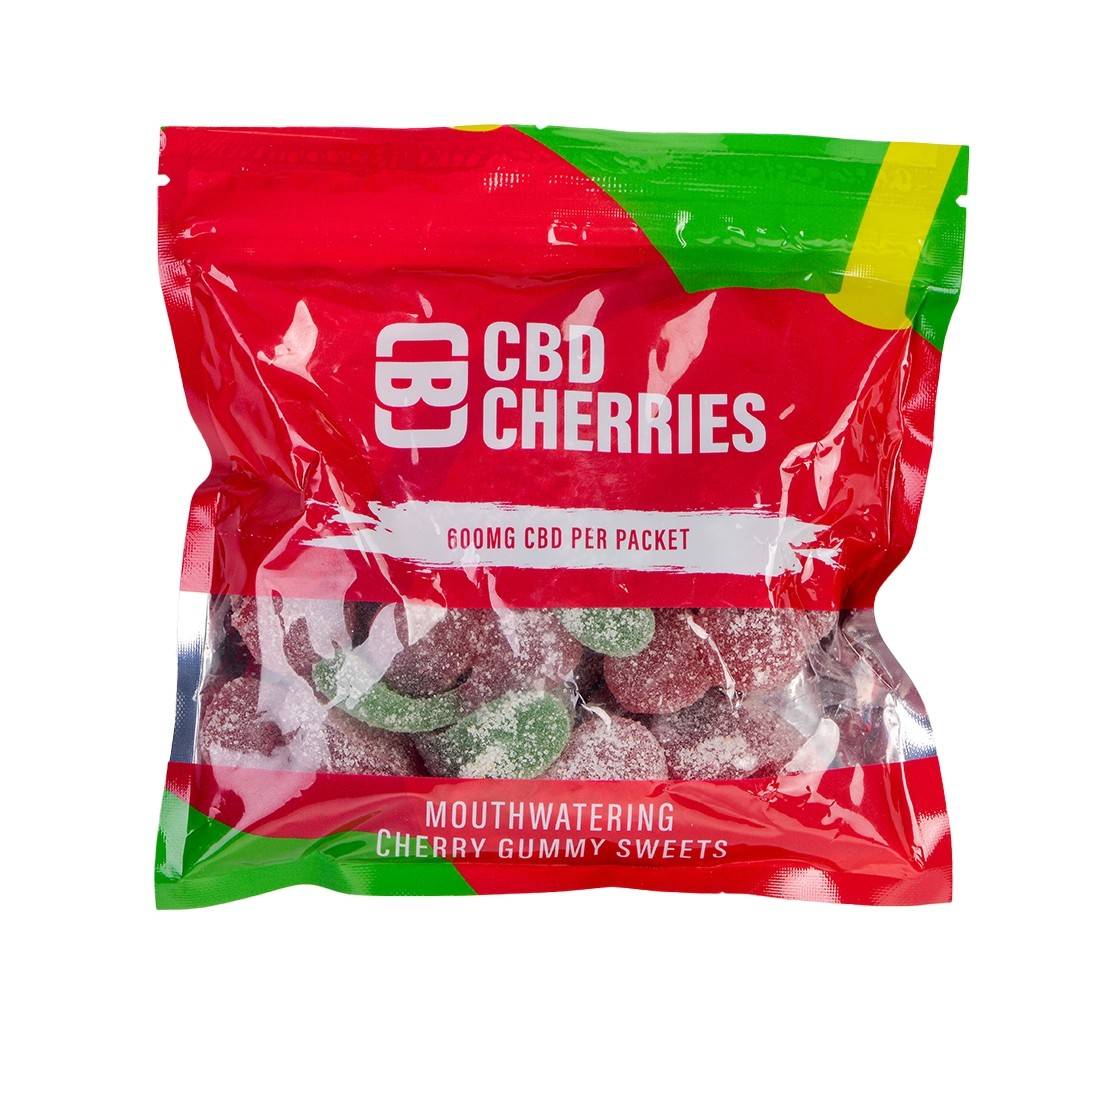 Bonbons au CBD (Full Spectrum) Savoureux & Pas chers